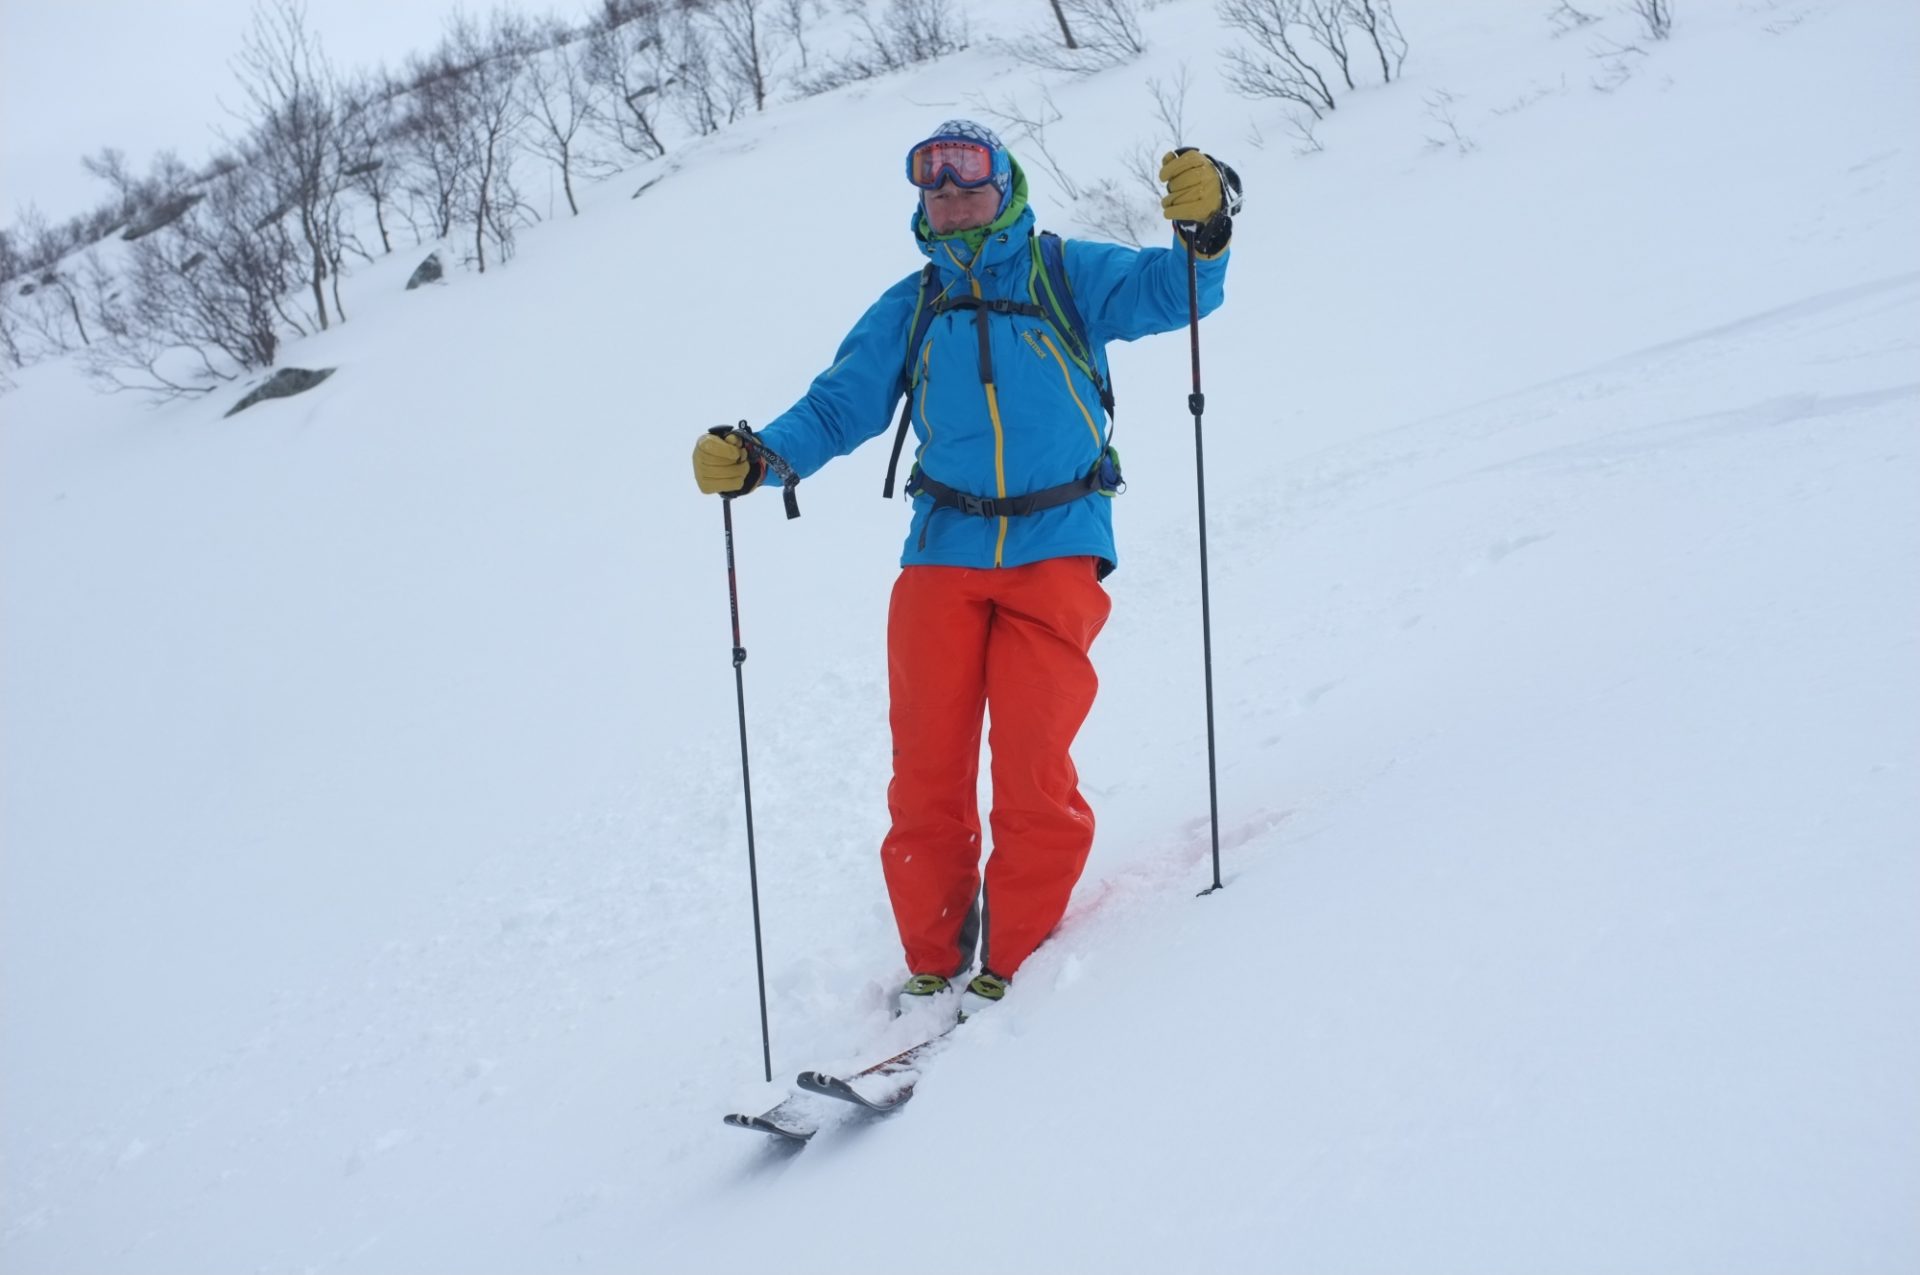 Bergsteigertipp: Ski an- und ausziehen